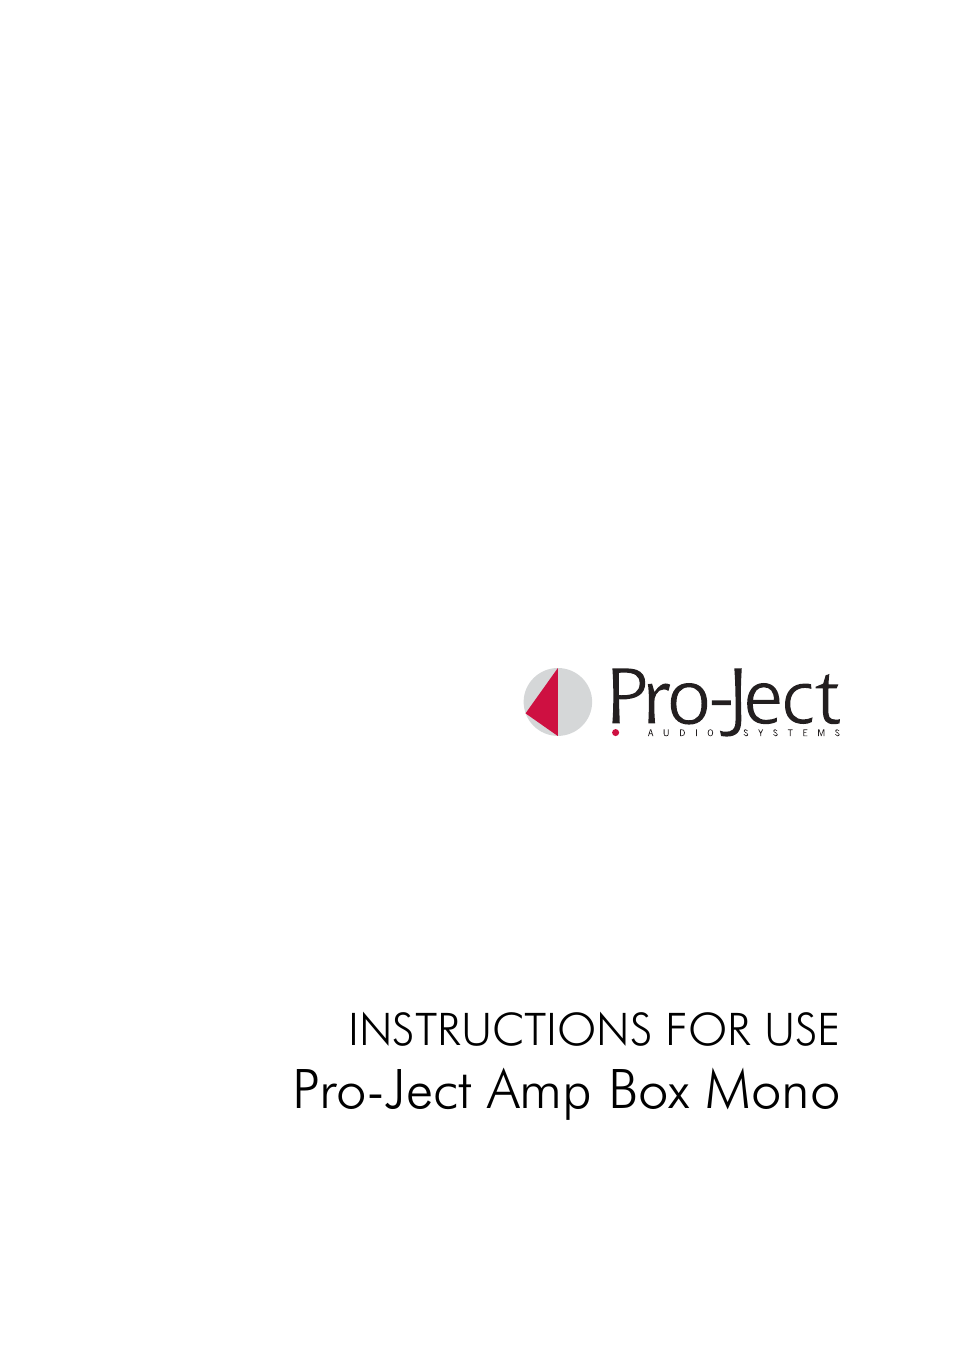 Amp Box Mono